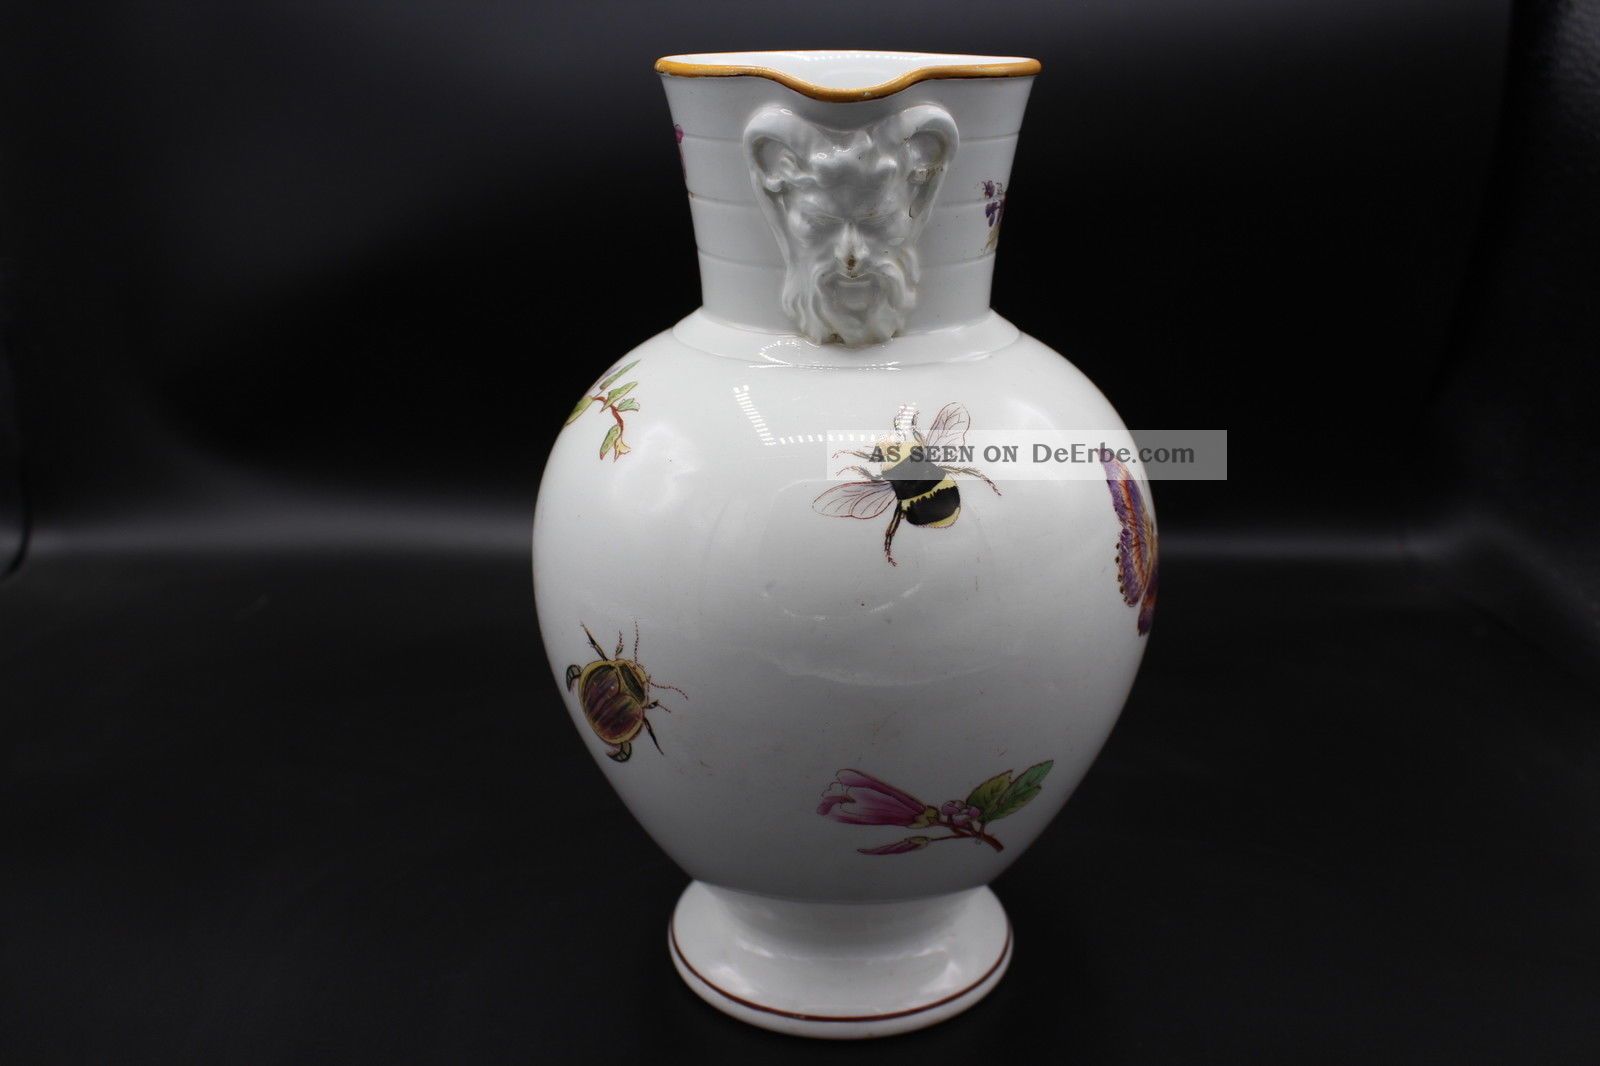 Wedgwood Keramik Historismus Kanne Vase Insekten Dekor 1880 Nach Marke & Herkunft Bild